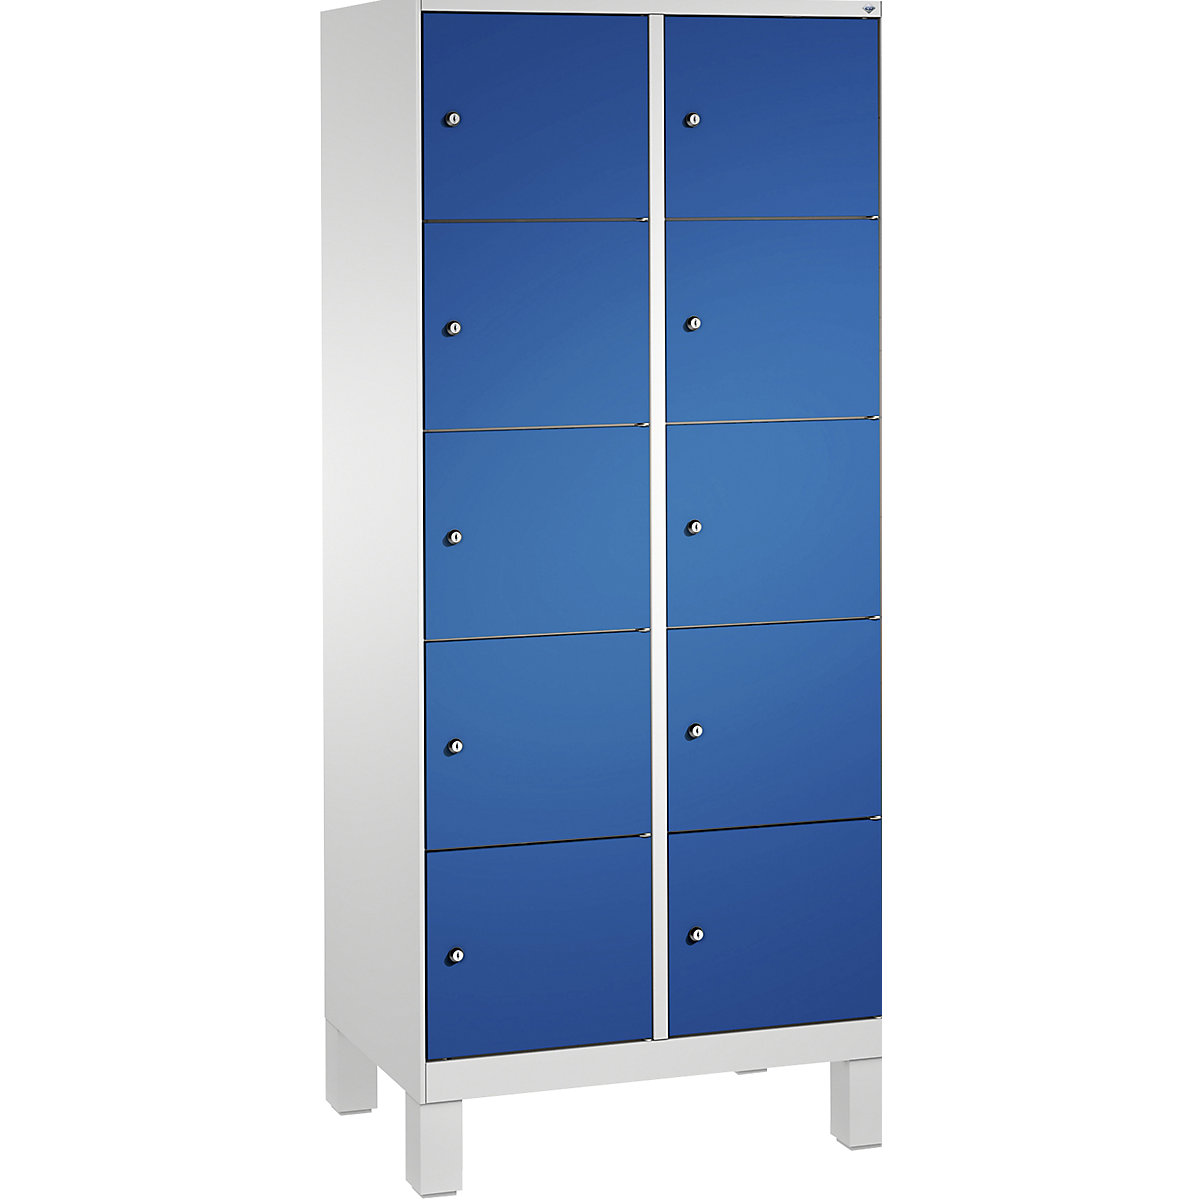 Armoire à casiers sur pieds EVOLO – C+P, 2 compartiments, 5 casiers chacun, largeur compartiments 400 mm, gris clair / bleu gentiane-3